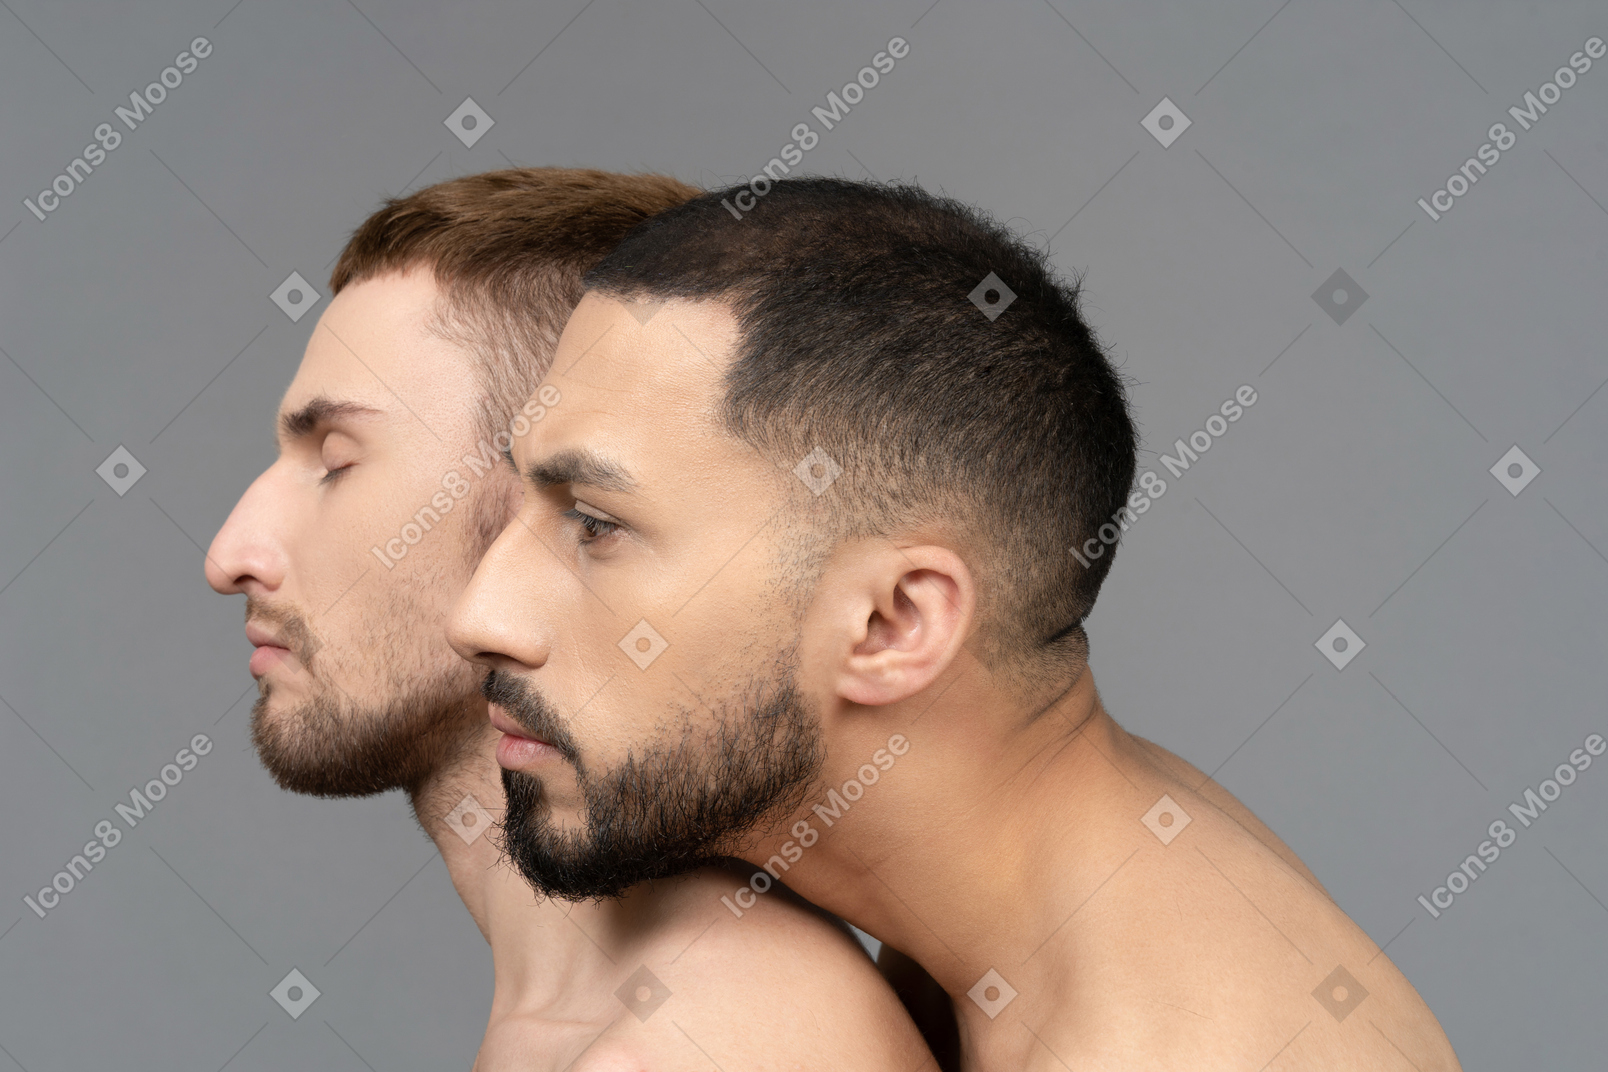 Primo piano di un giovane uomo caucasico che mette delicatamente la testa su una spalla di un altro uomo